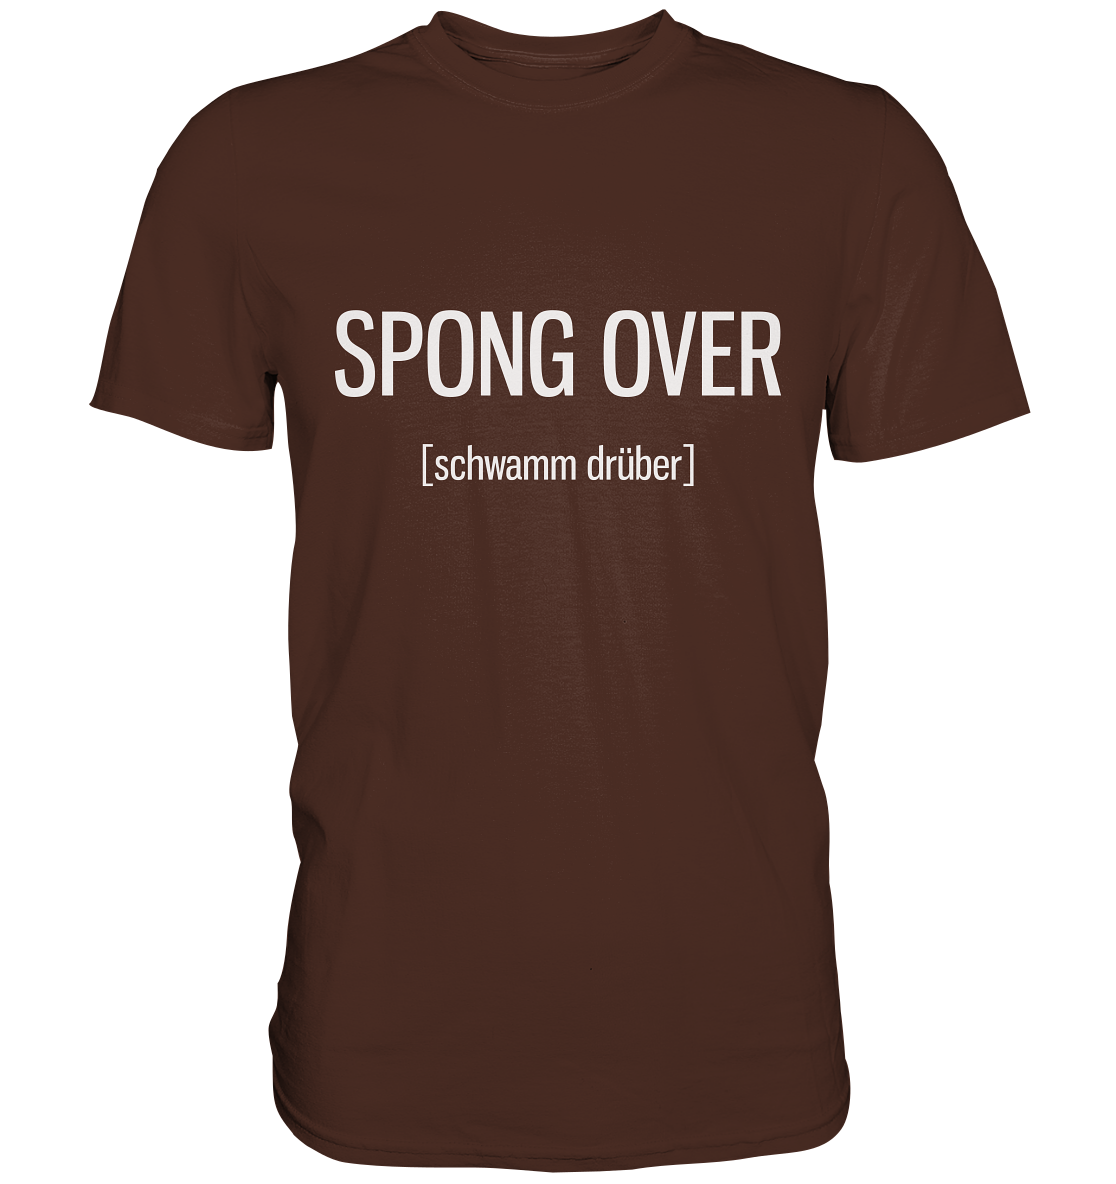 Spong over. Englisch - Unisex Premium Shirt